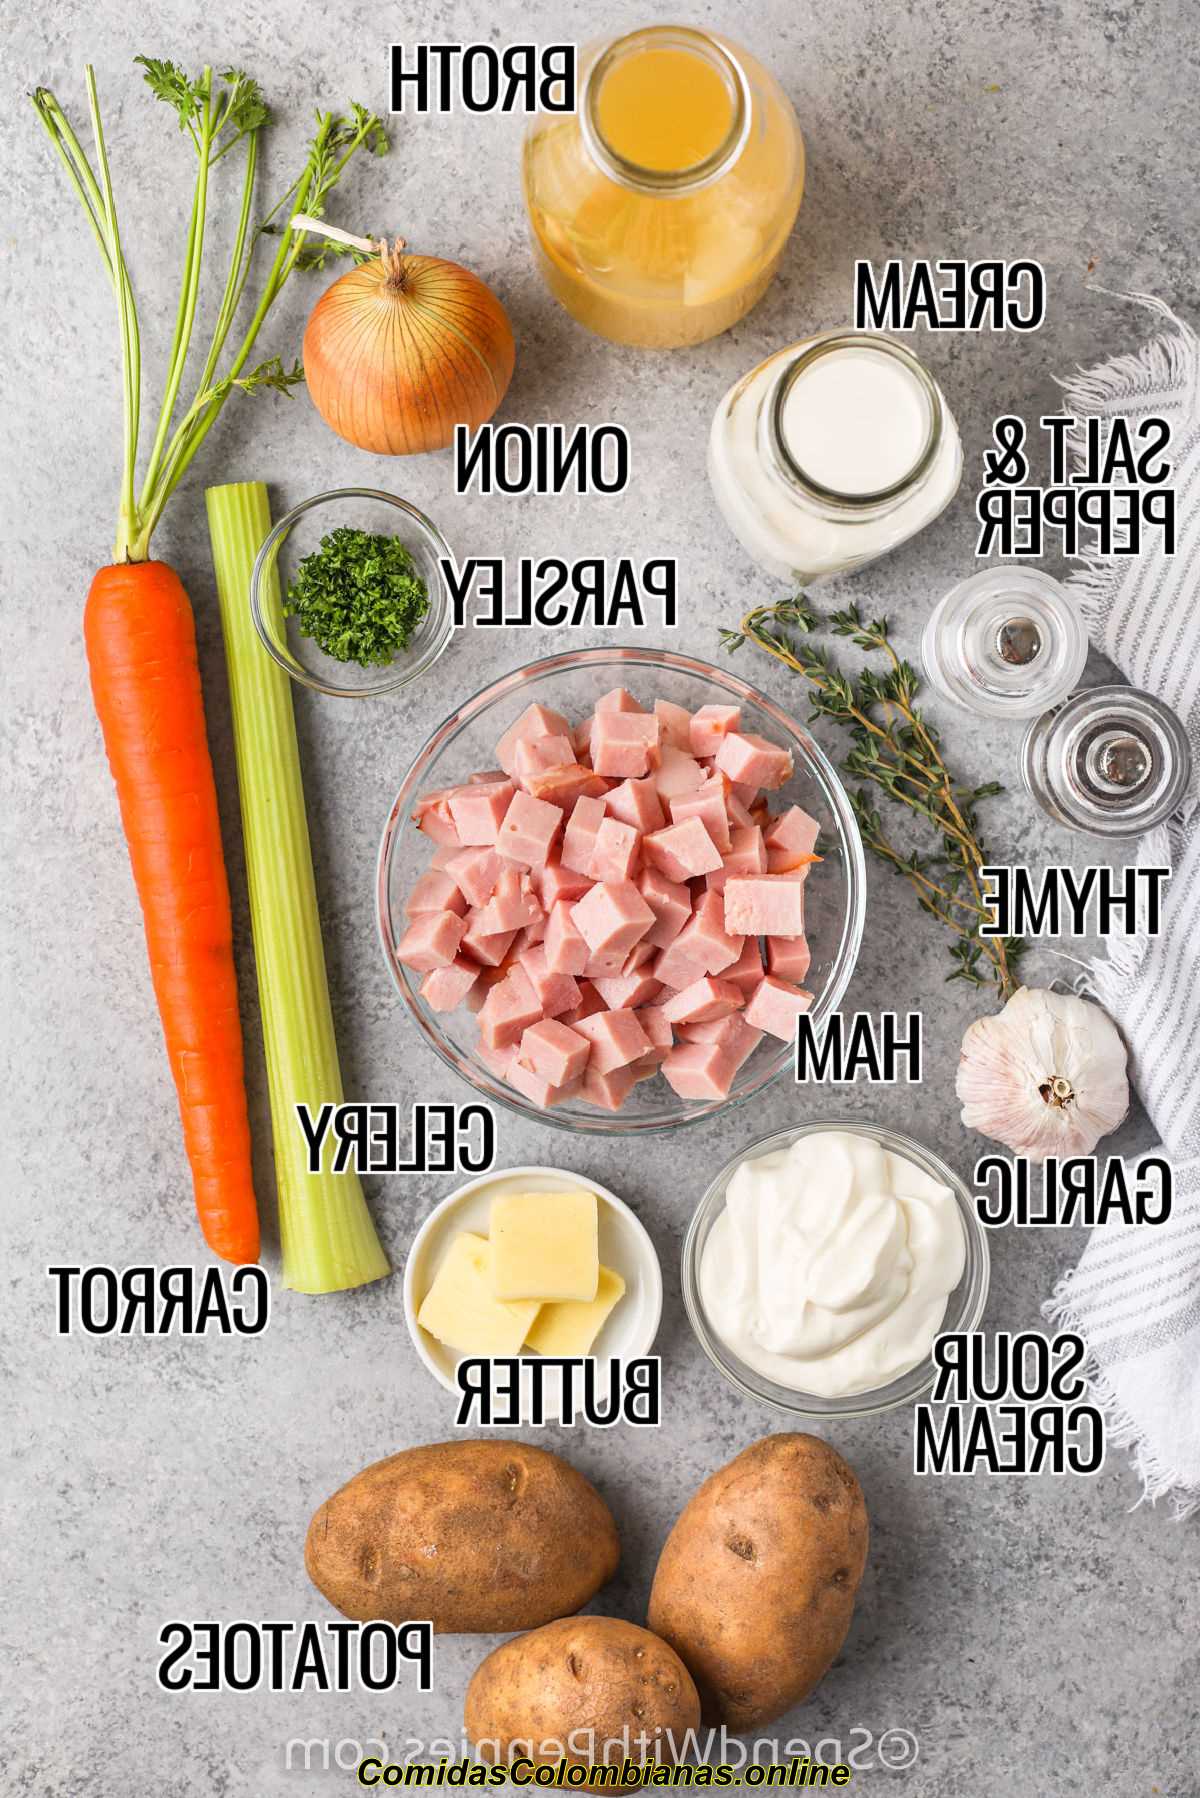 Ingredientes etiquetados de sopa de papa y jamón